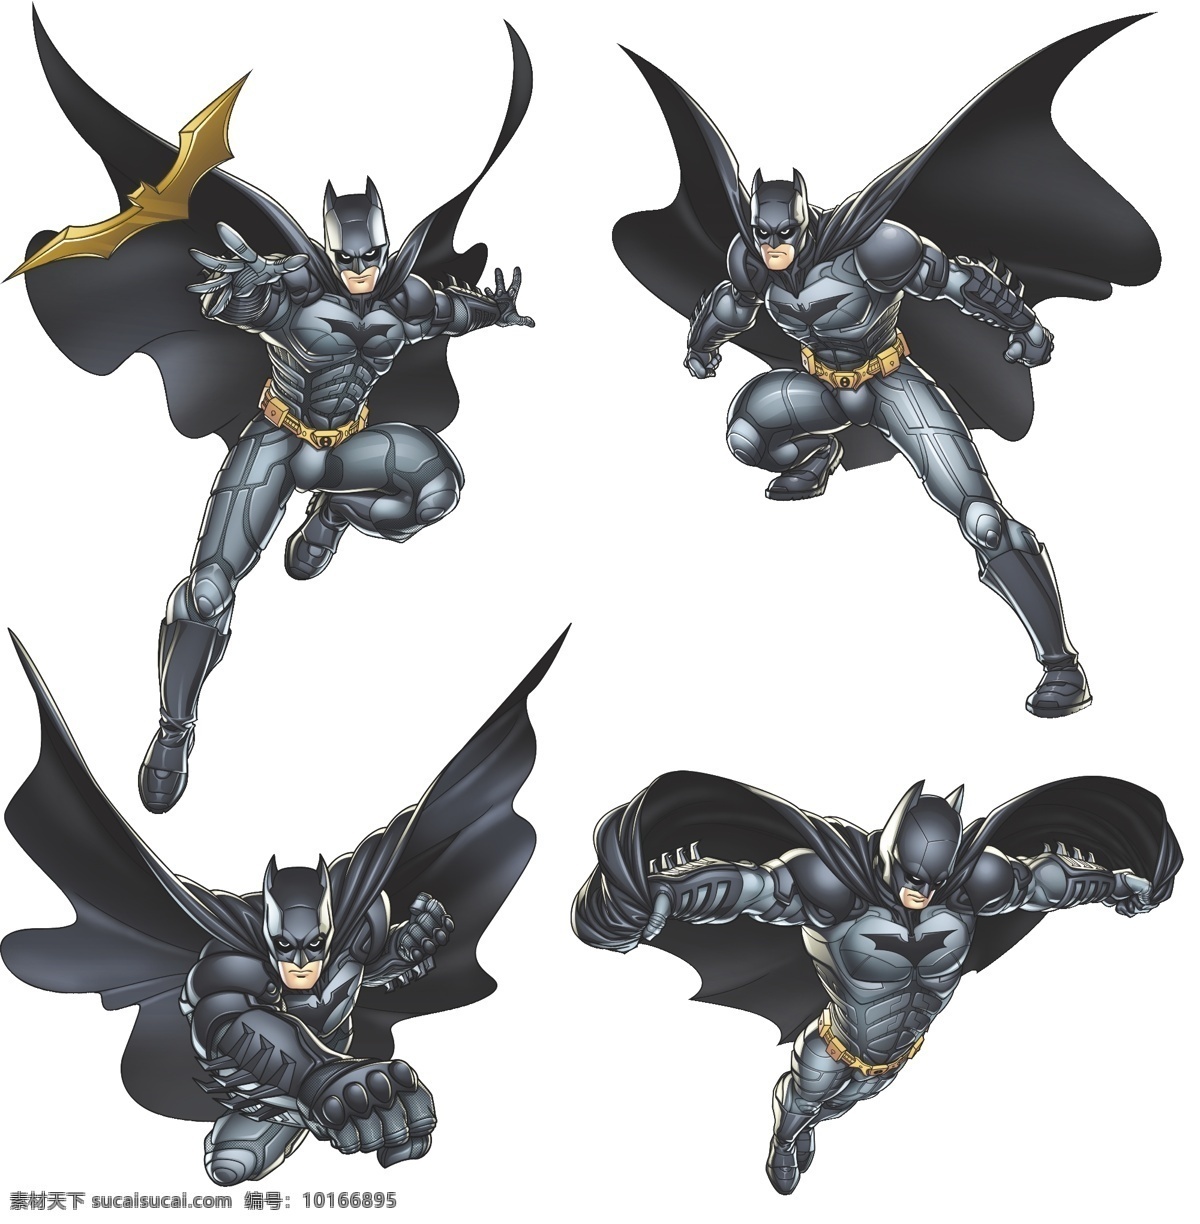 蝙蝠侠 矢量 模板下载 batman 黑暗骑士 超级英雄 英雄联盟 卡通形象 矢量人物 明星偶像